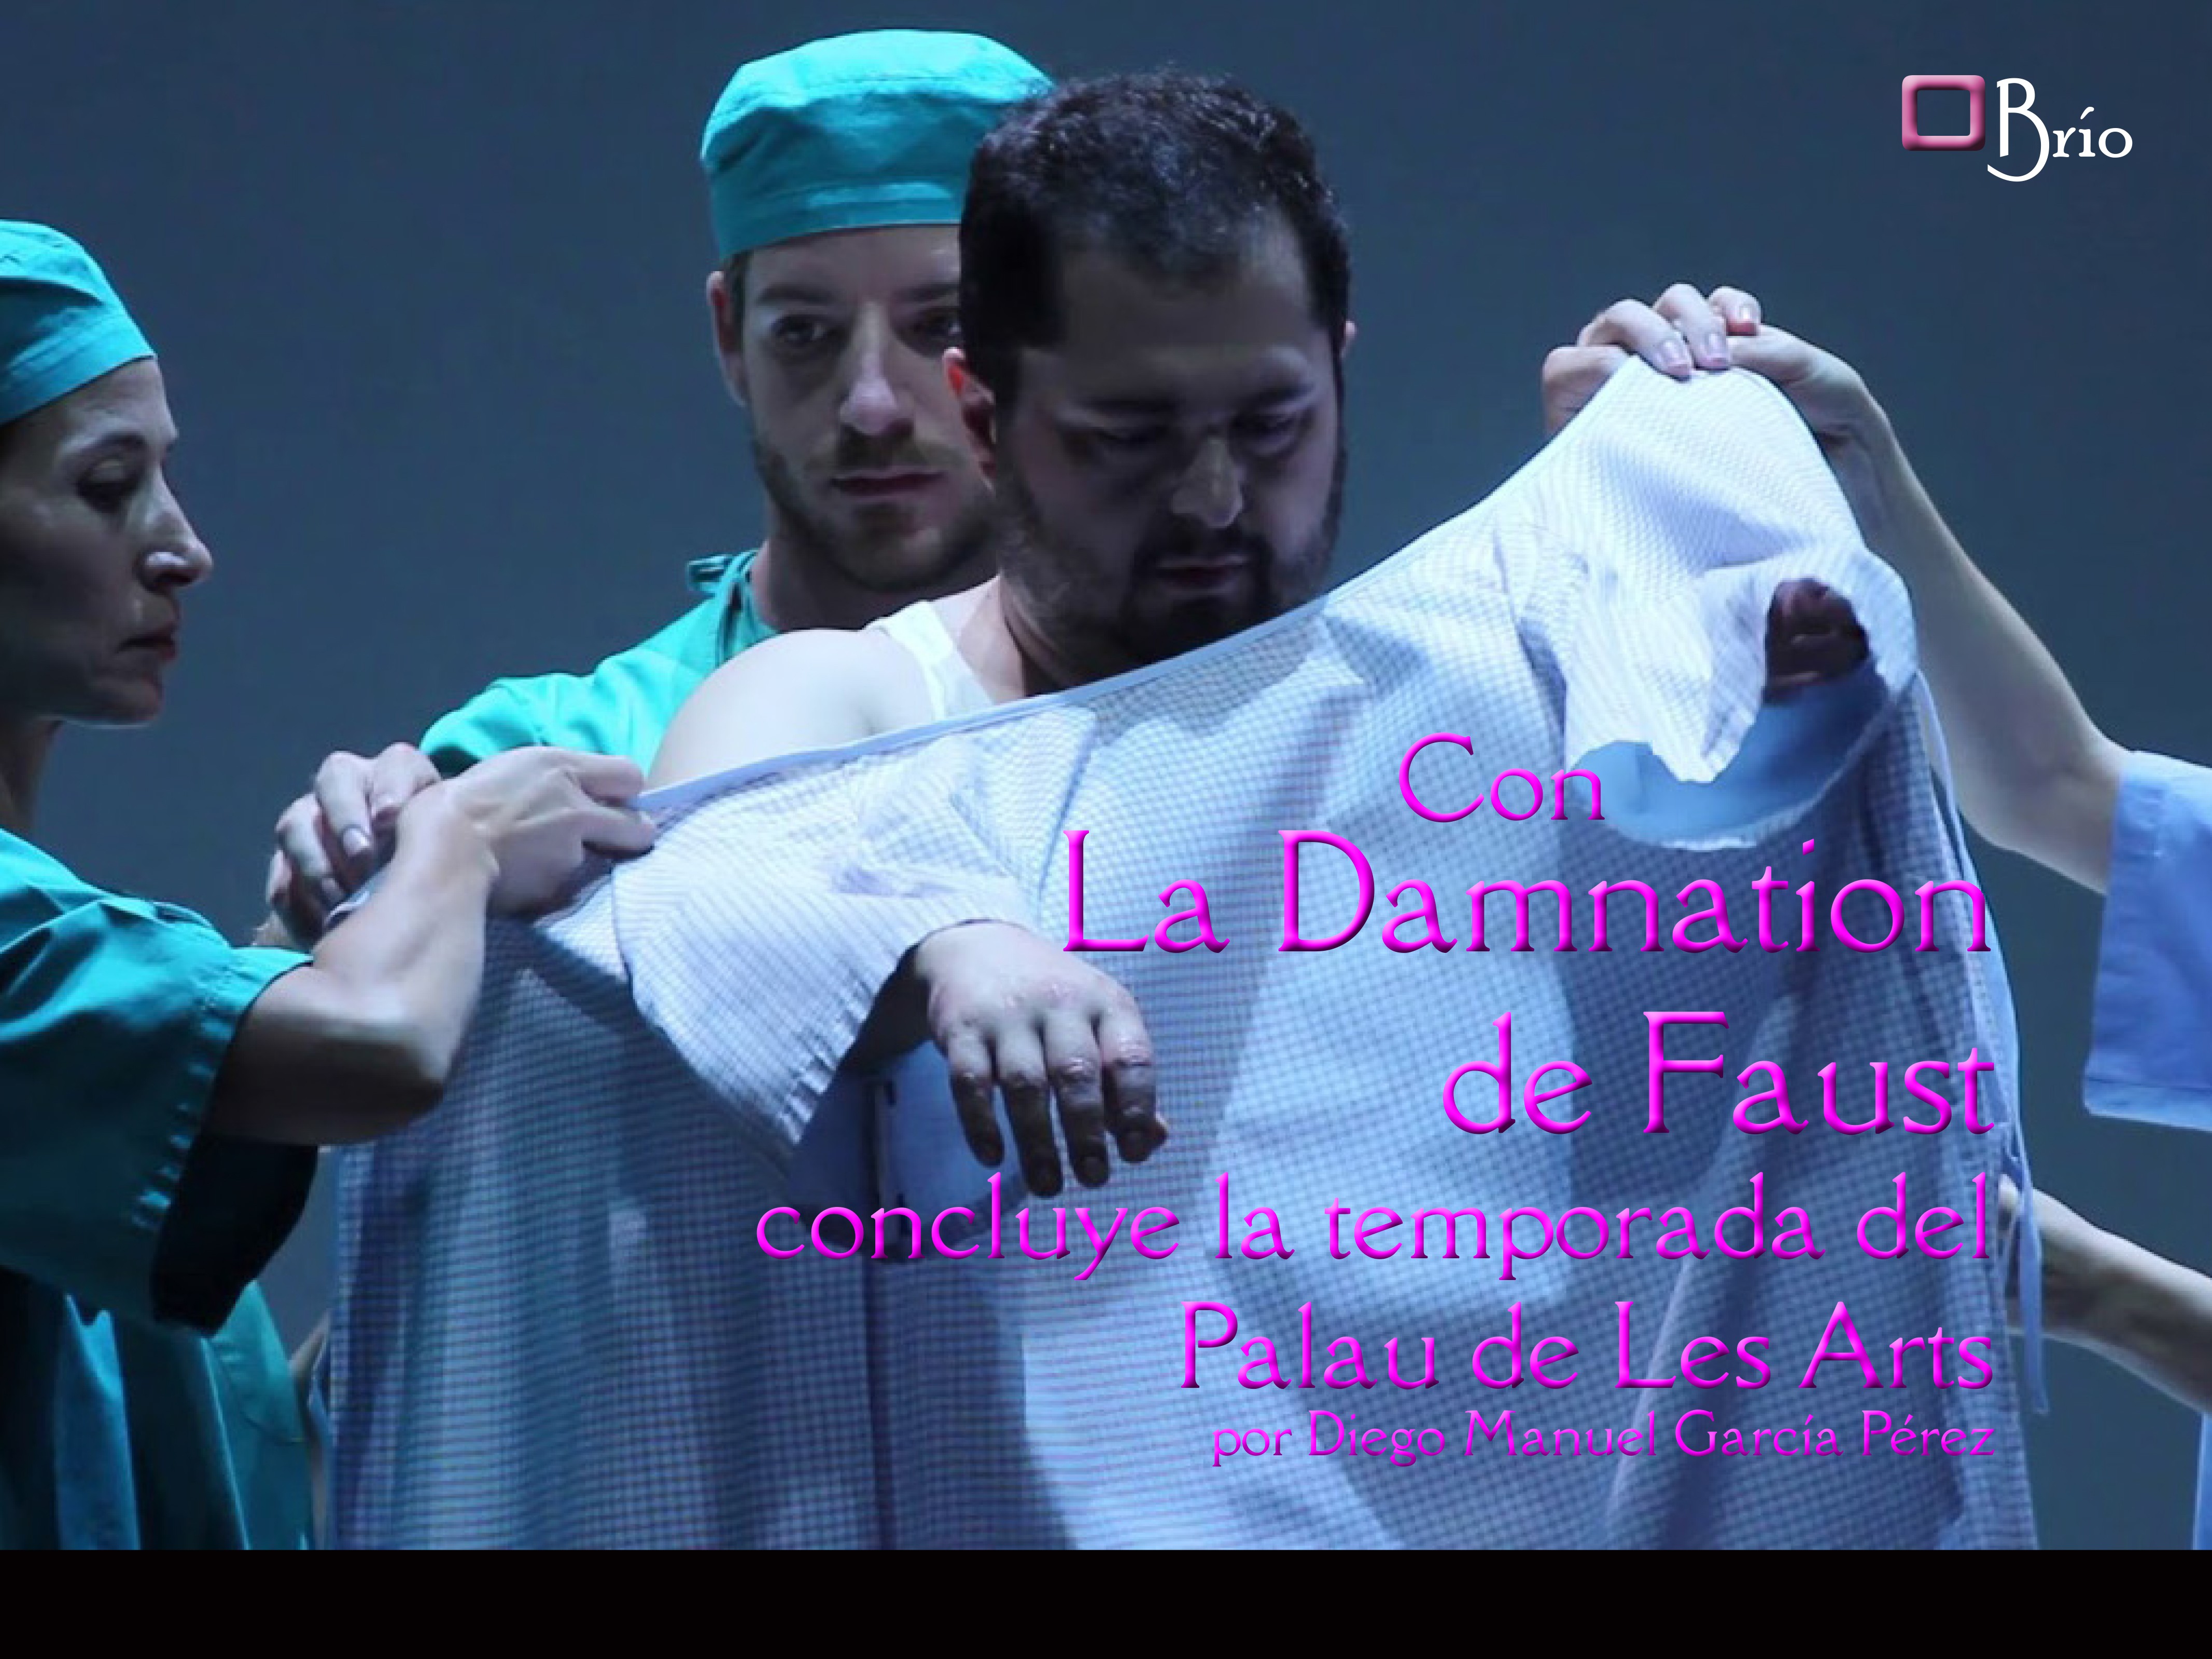 Con La Damnation de Faut concluye temporada el Palau de Les Arts de Valencia